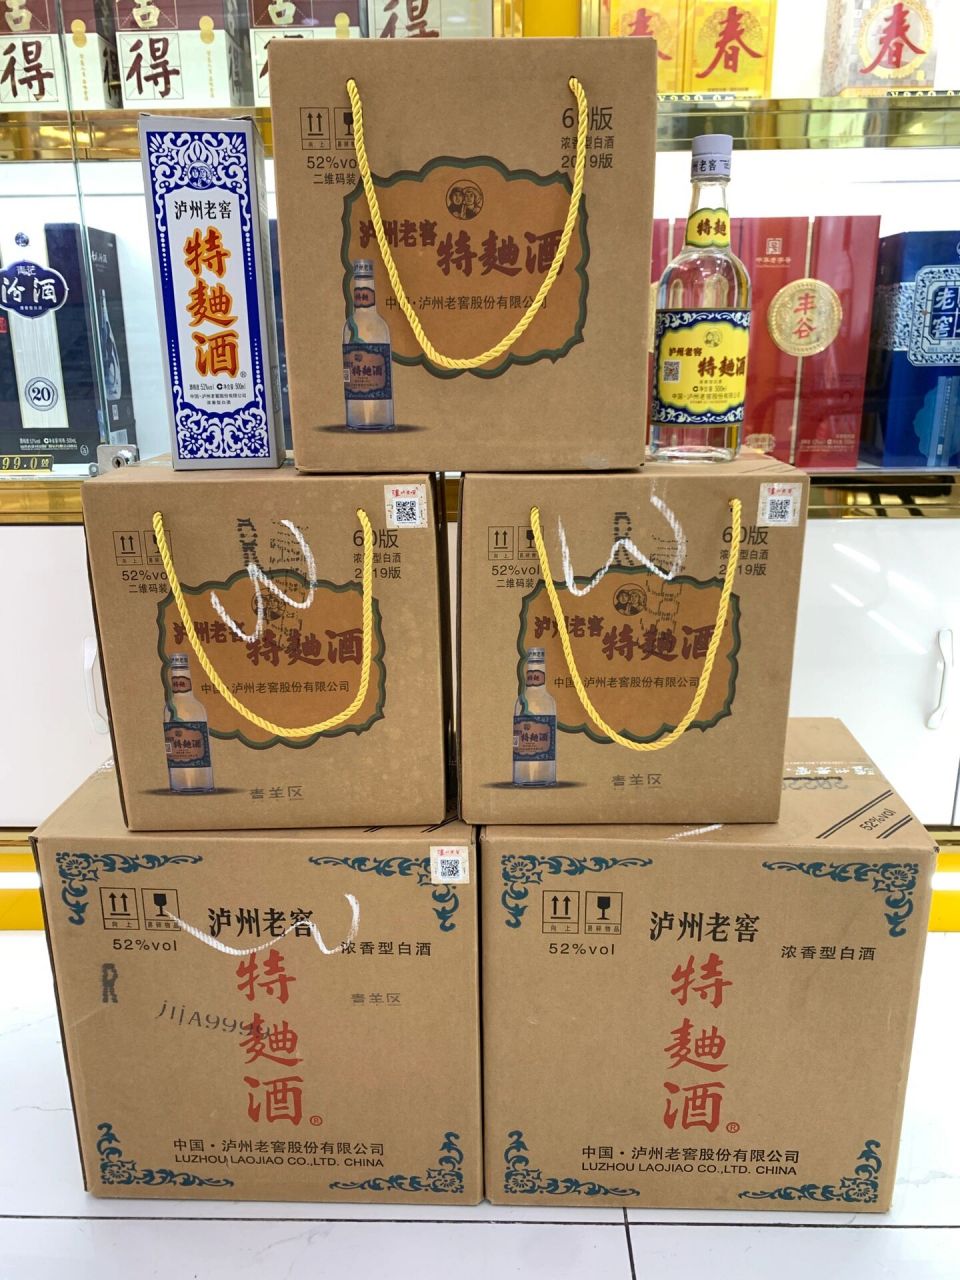 泸州老窖特曲60版(1572) 两斤礼盒装原件 单瓶终于有现货了!